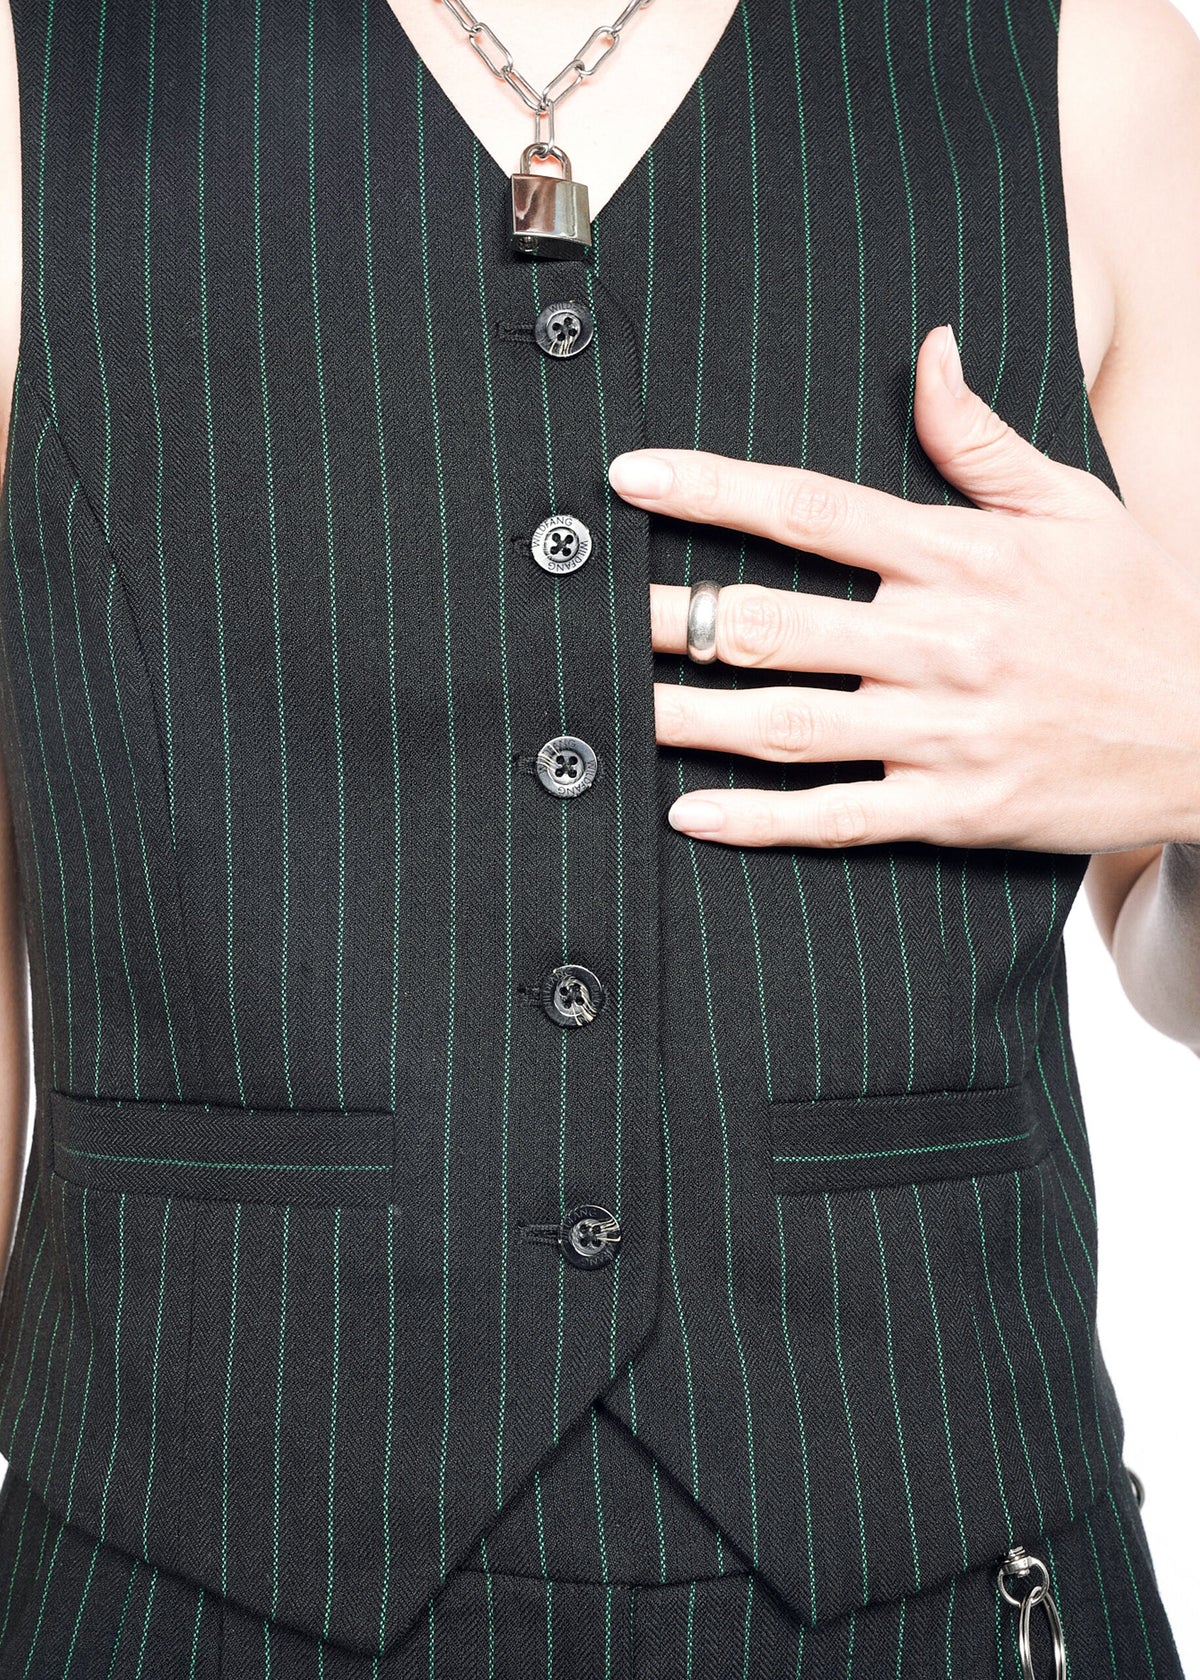 The Empower Pinstripe Vest in Black/Emerald